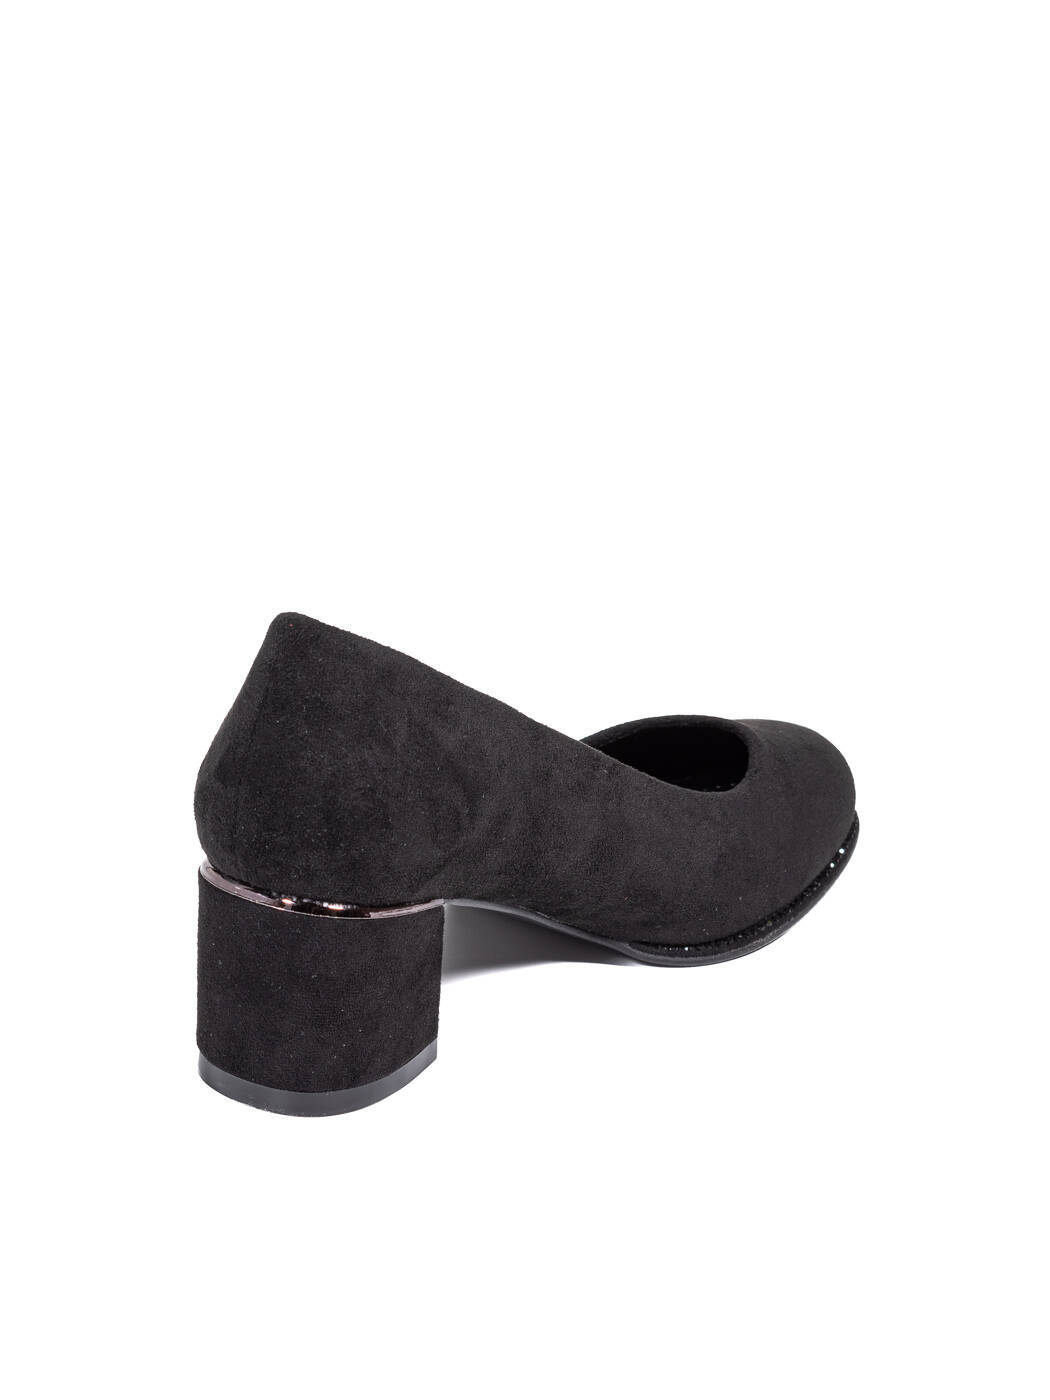 Туфли женские черные экозамша каблук устойчивый демисезон AM вид 1